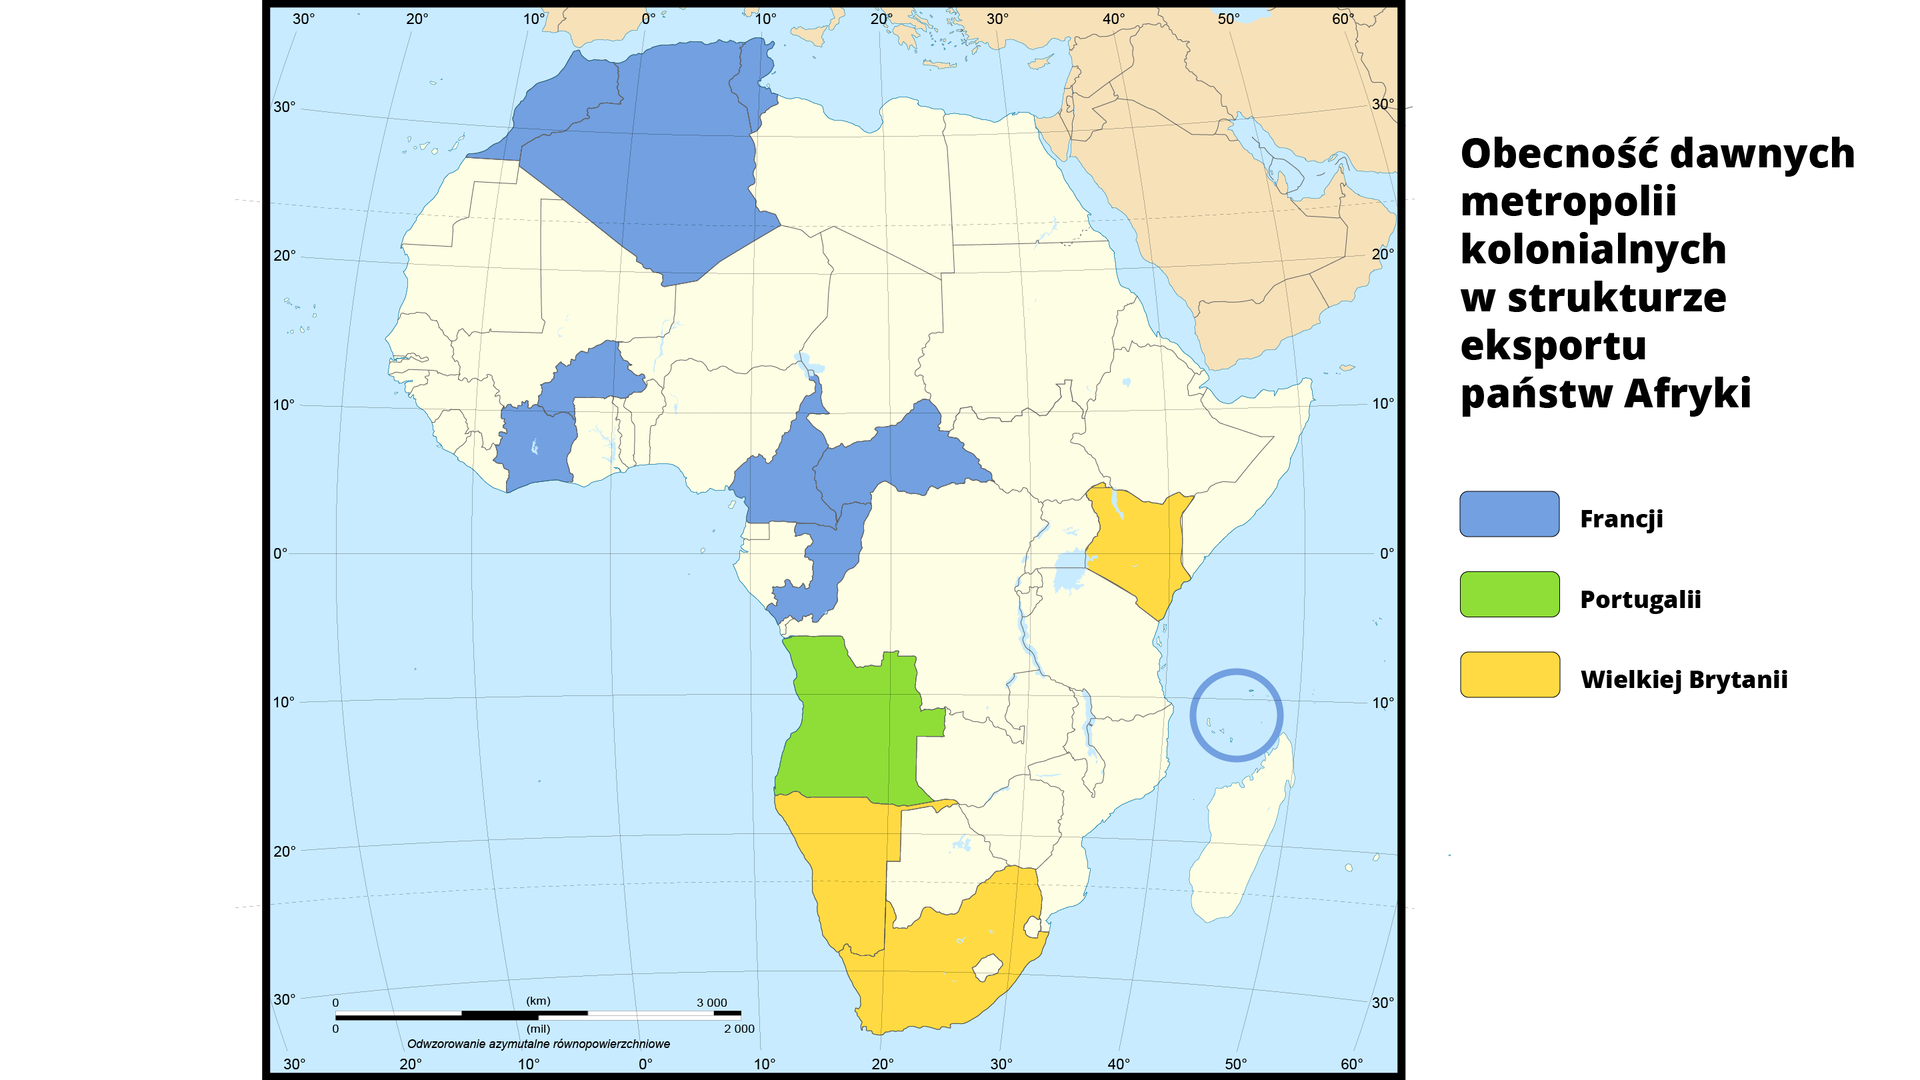 Mapa polityczna obrazuje obecność dawnych metropolii kolonialnych w strukturze eksportu państw Afryki. Państwa zaznaczone na niebiesko to państwa będące pod tym względem pod wpływem Francji - Kongo, Burkina Faso, Kamerun, Algieria, Mauritius, Seszele, Maroko, Tunezja, Komory, Republika Środkowoafrykańska, na zielono pod wpływem Portugalii - Angola, Republika Zielonego Przylądka a na żółto pod wpływem Wielkiej Brytanii - Kenia, Namibia i Republika Południowej Afryki.